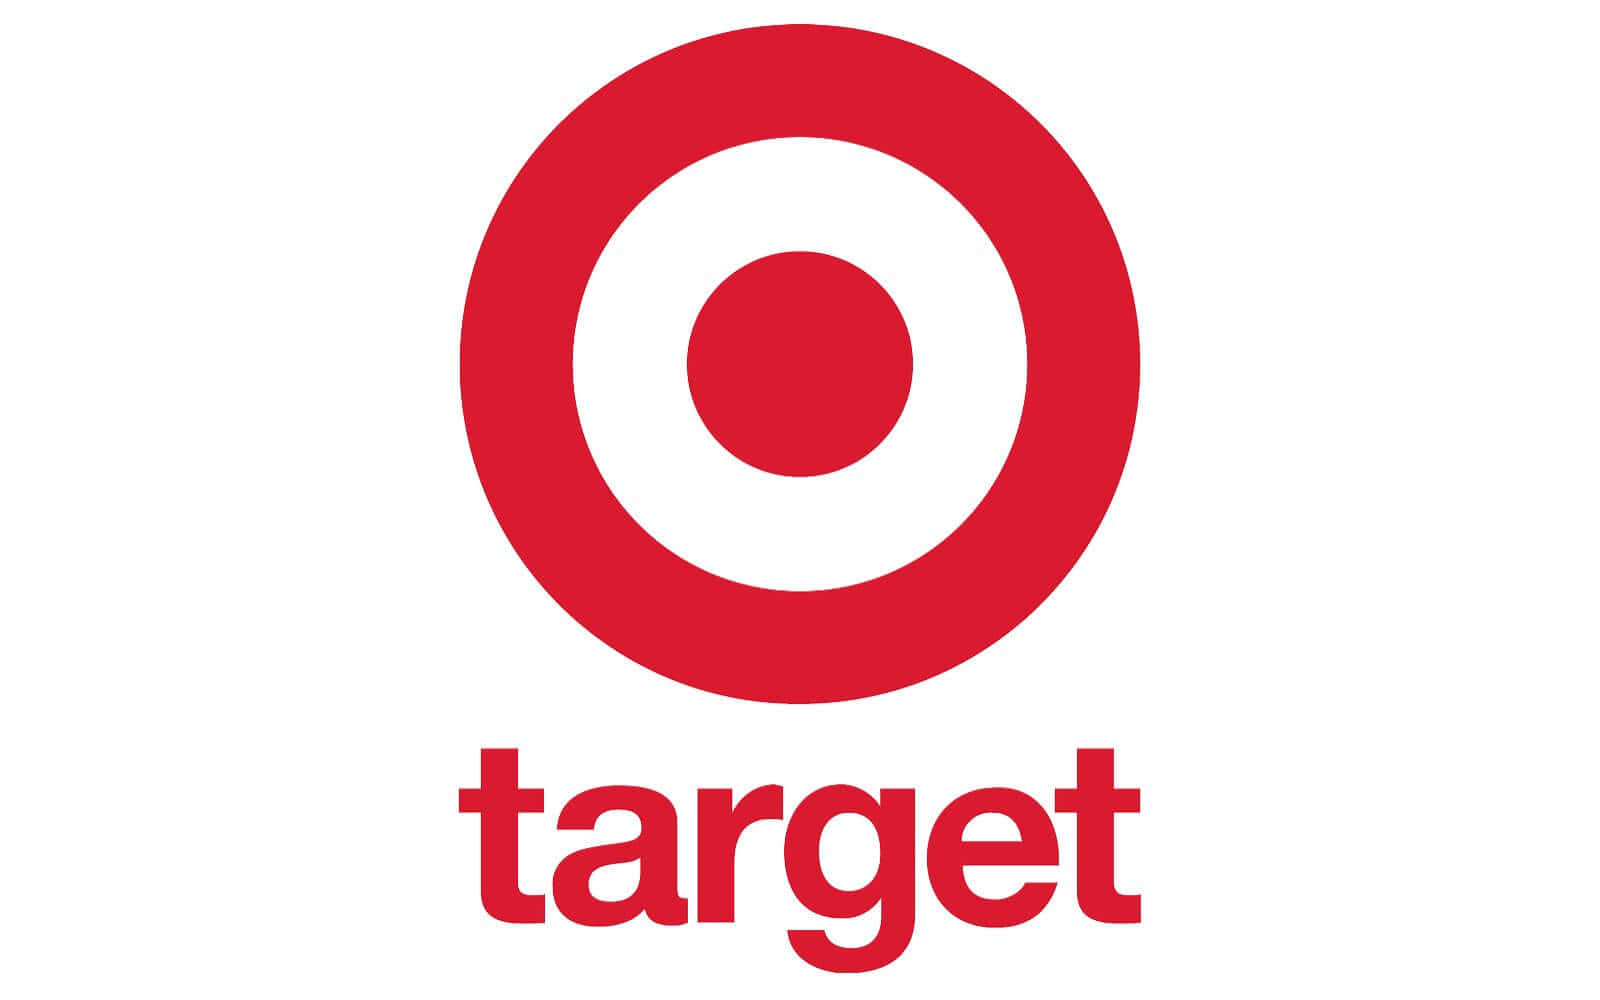 Shop your favorite brands at Target.